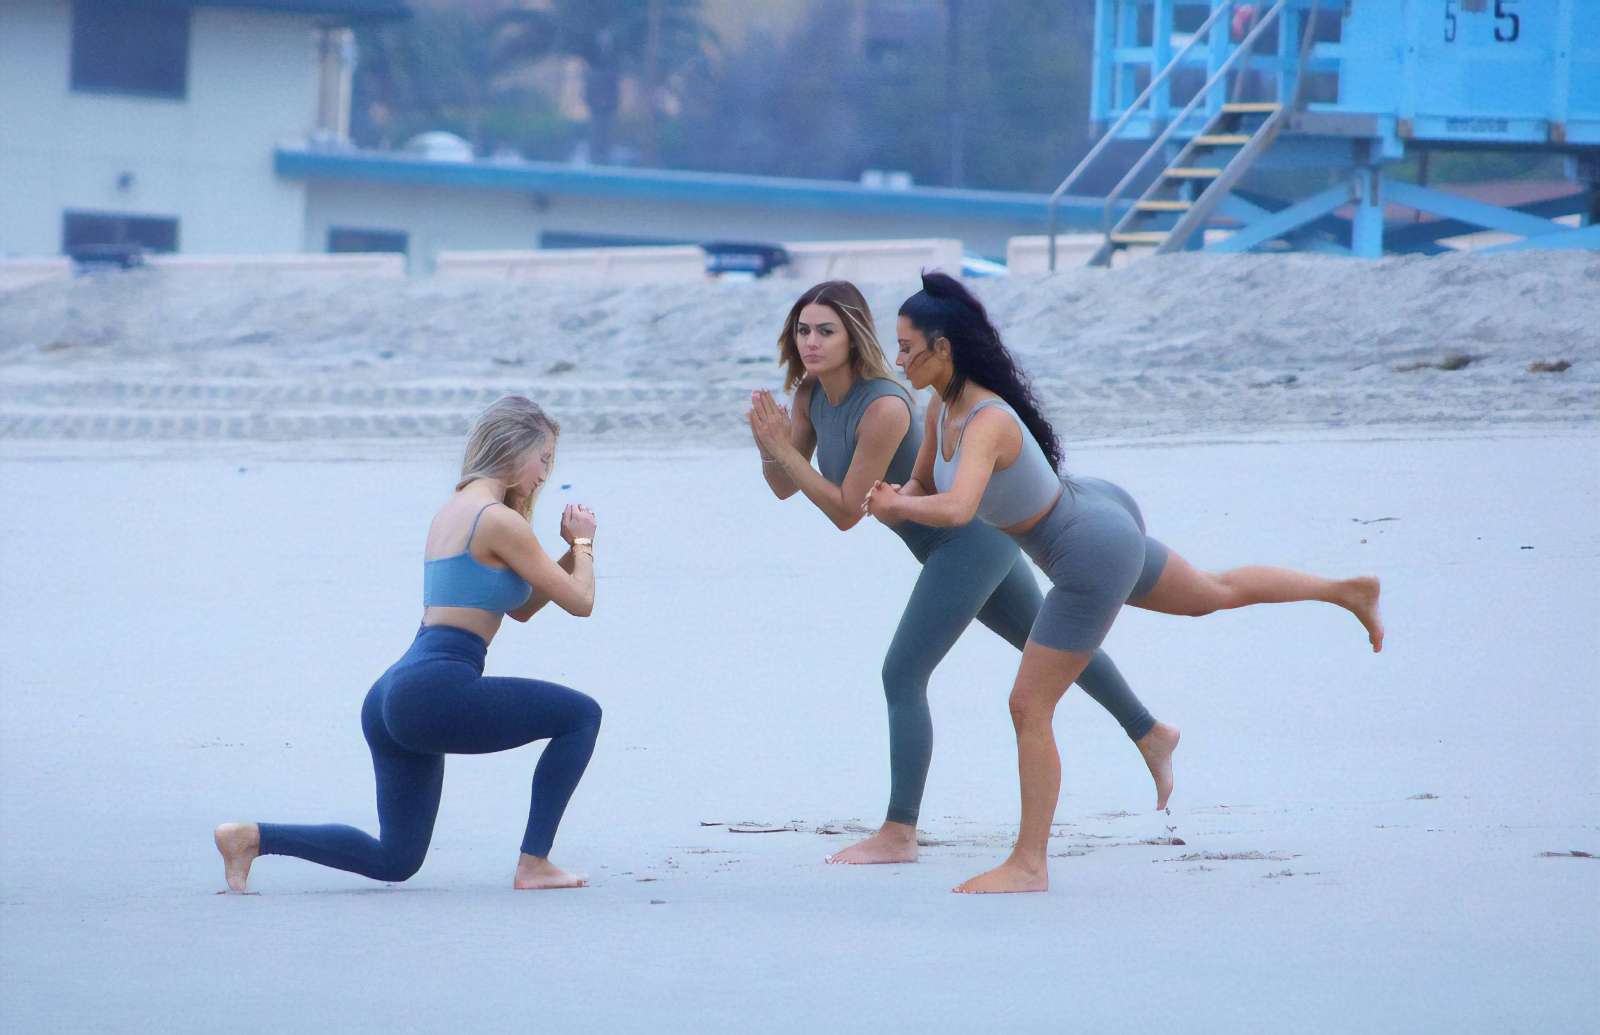 Kim Kardashian in Bikini on the beach in Los Angeles